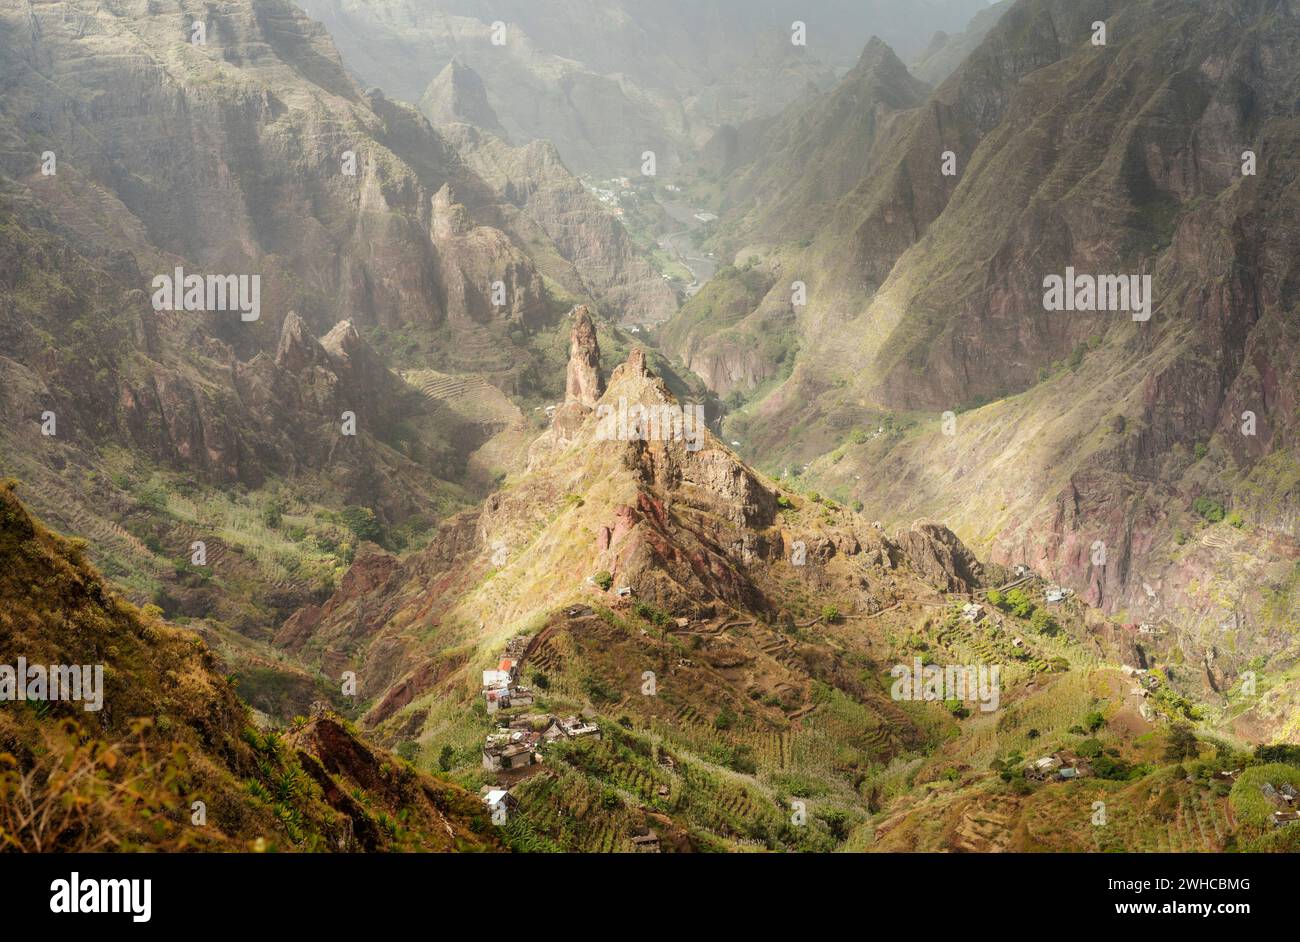 Santo Antao, Kap Verde. Berggipfel im ariden Xo-Xo-Tal. Malerische beeindruckende Berglandschaften. Stockfoto